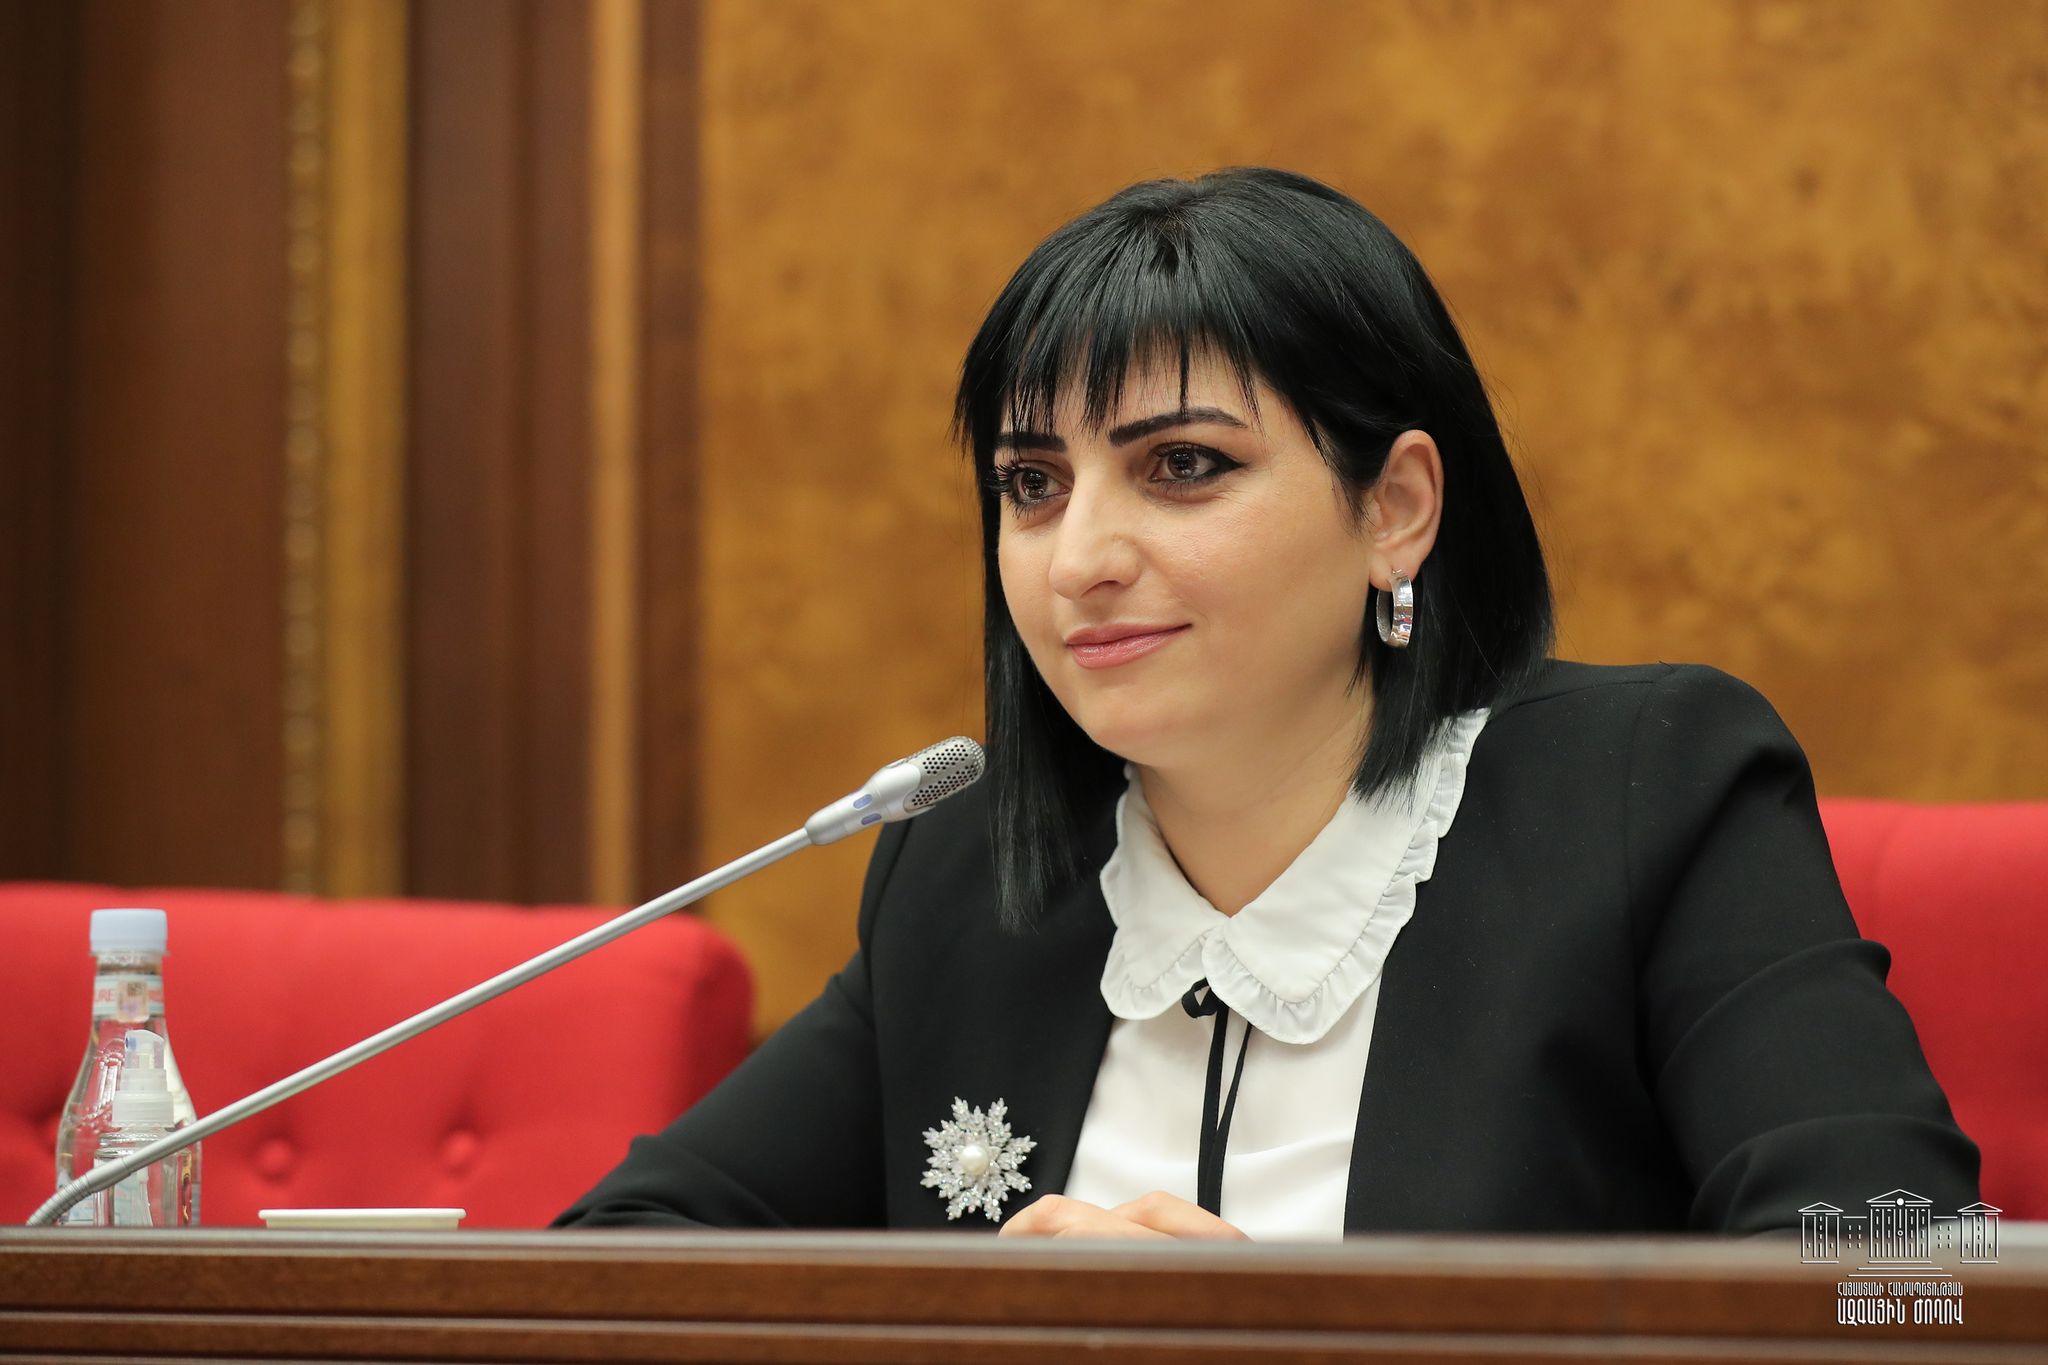 Թագուհի Թովմասյանը հանդիպելու է ՀՀ մարդու իրավունքների ներկա ու նախկին պաշտպանների հետ